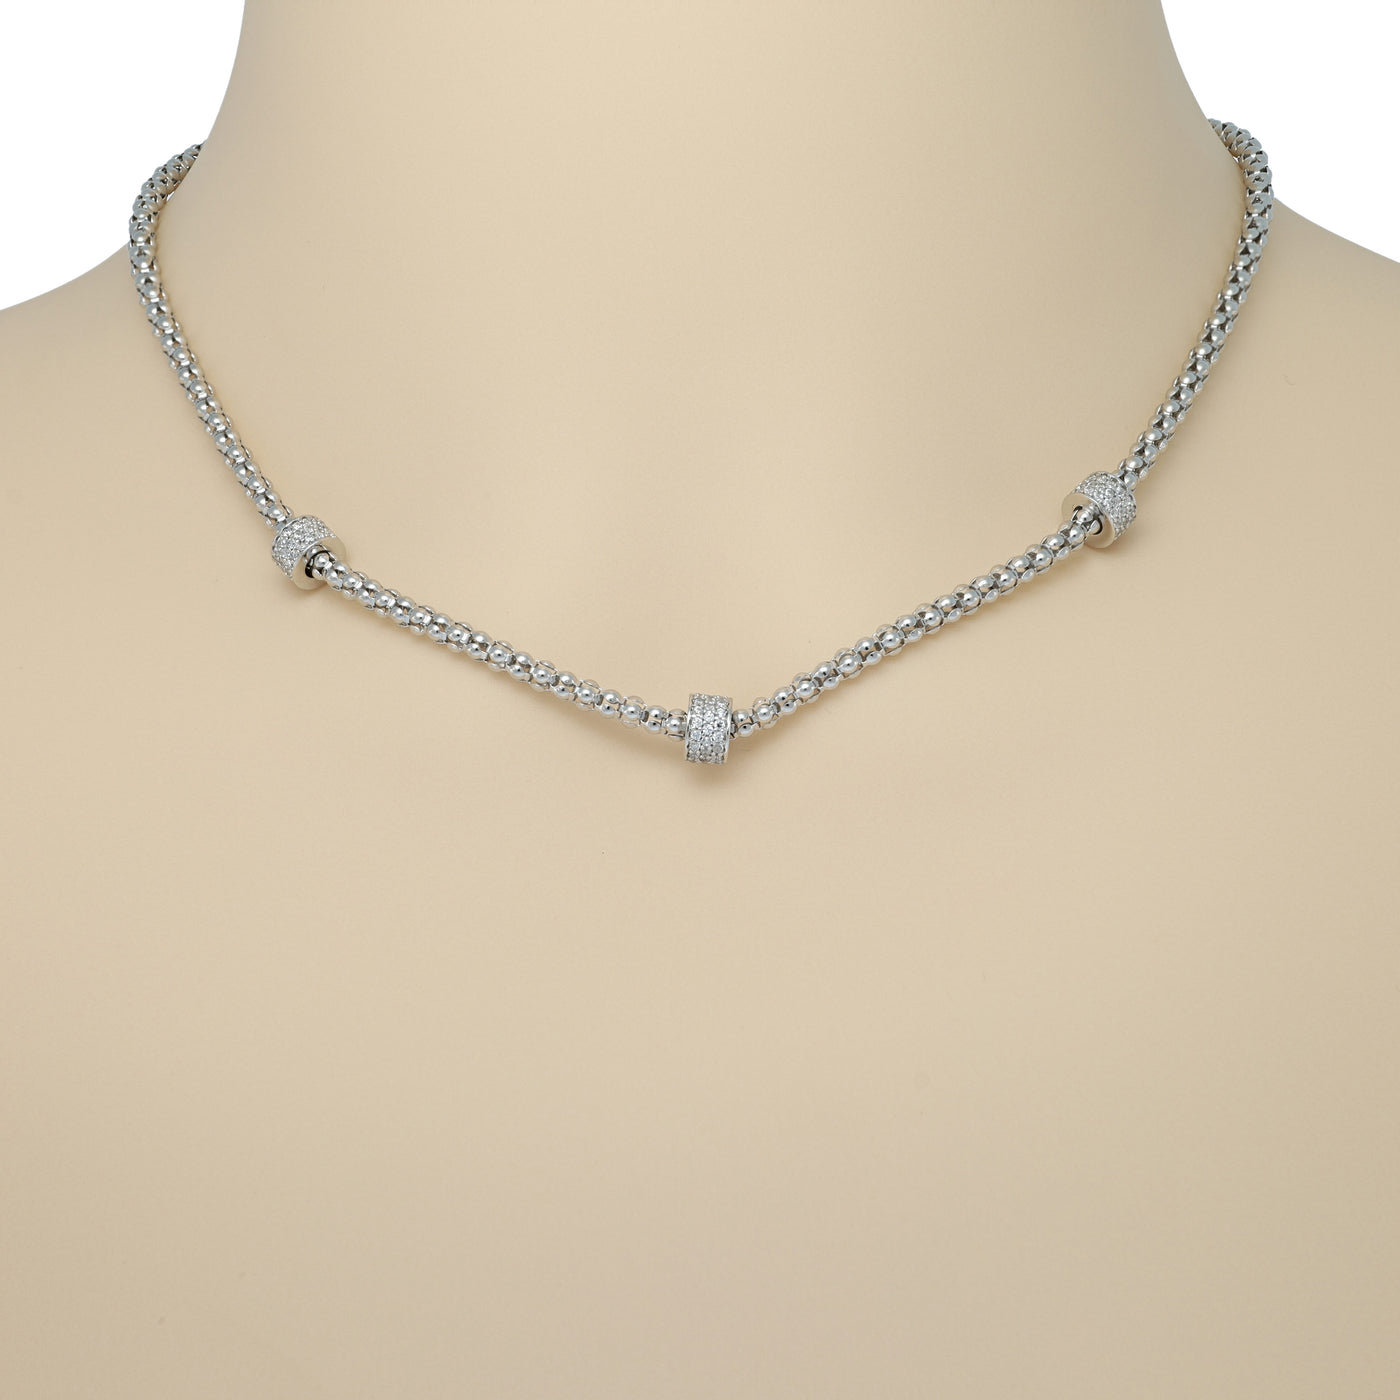 IL Diletto - 925 Italian Silver Necklace, Cubic Zirconia Rondelle, Rhodium Plated